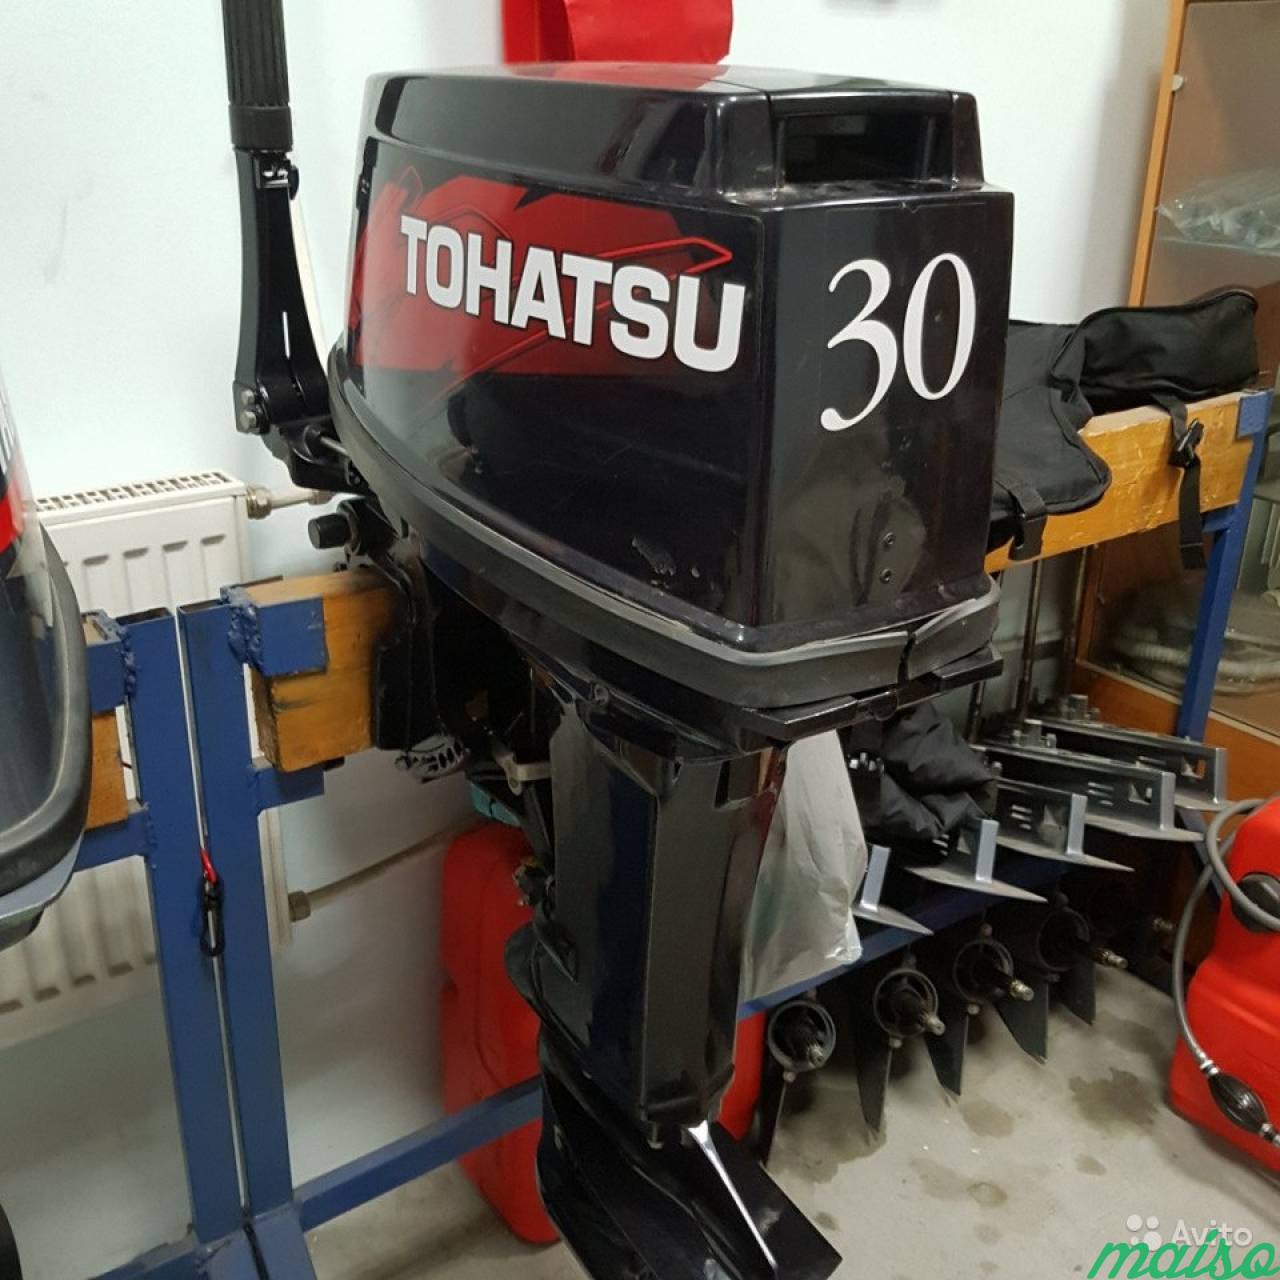 Лодочные моторы тохатсу двухтактные купить. Лодочный мотор Tohatsu 30. Тохатсу 30 2-х тактный. Лодочный мотор Tohatsu m 30h eps. Лодочный мотор Тохатсу 30 двухтактный.